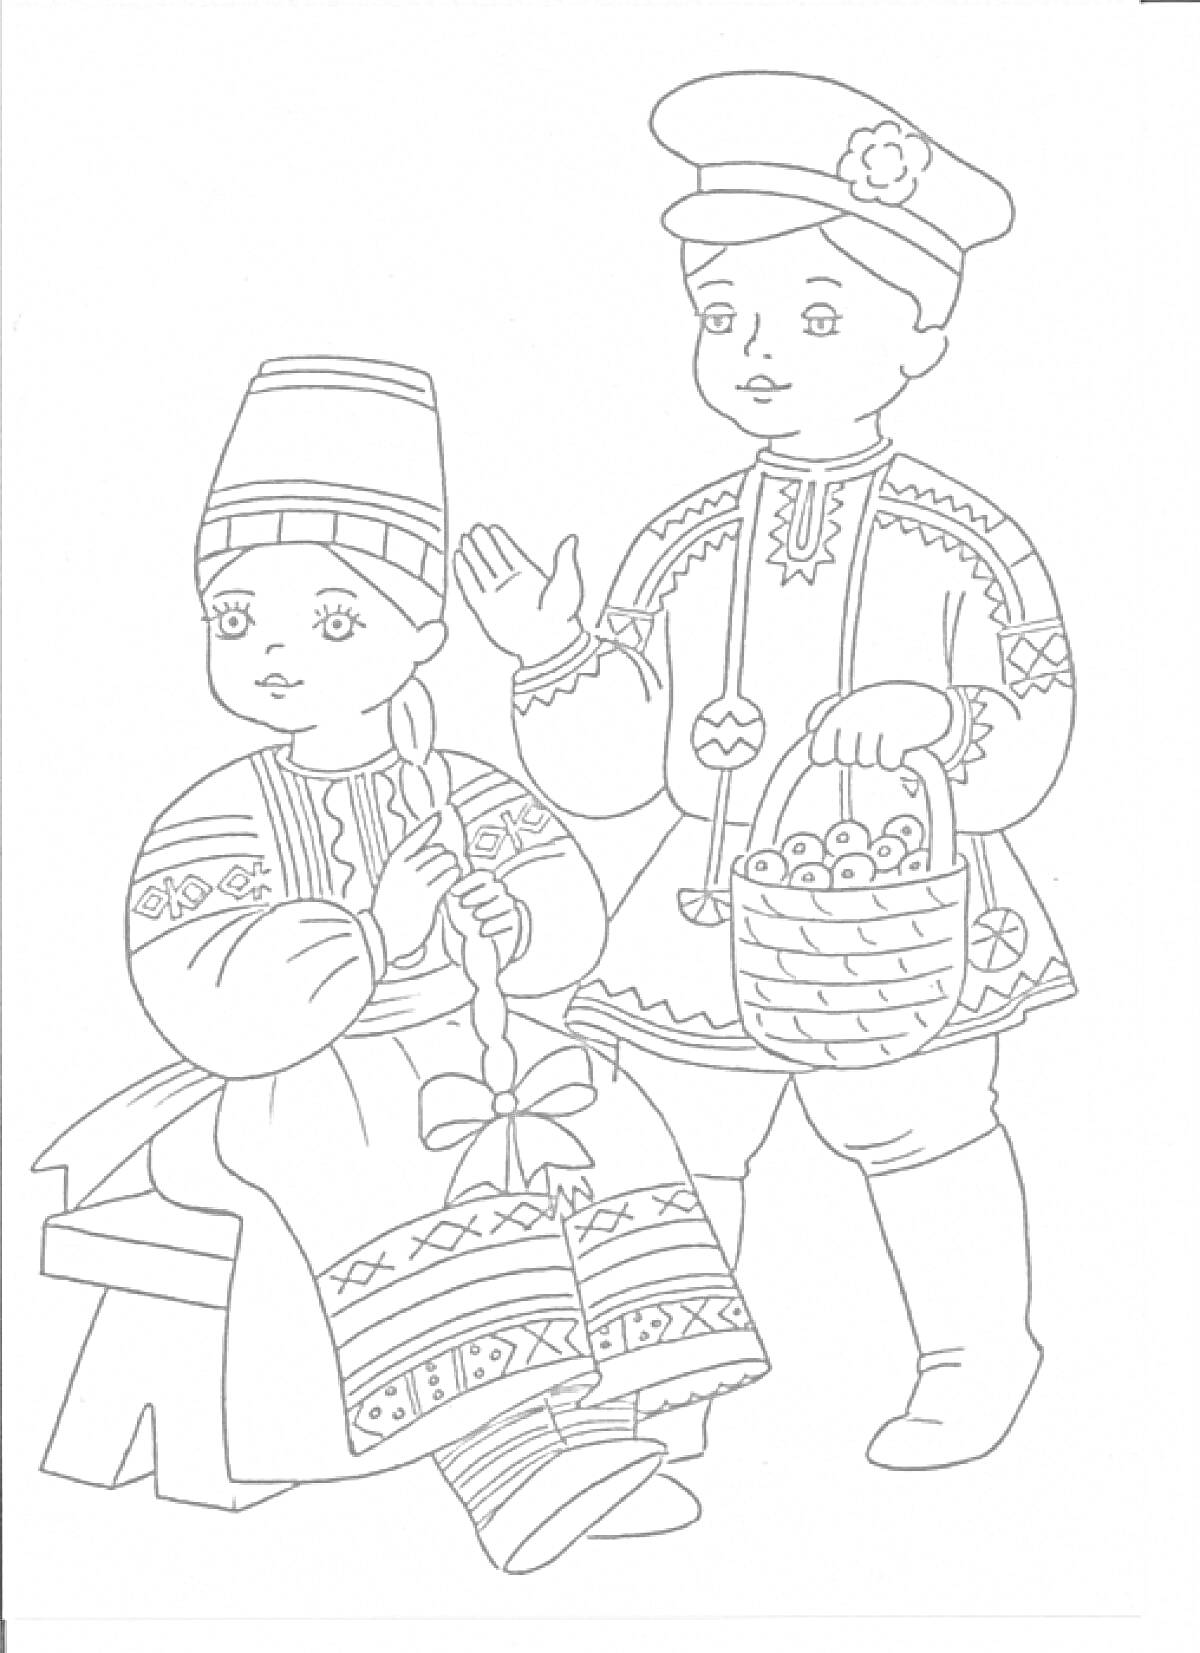 Раскраска Девочка плетет косу, сидя на лавке, в традиционном русском народном костюме с кокошником и сарафаном с народными узорами, рядом стоит мальчик в рубашке и шапке с корзинкой